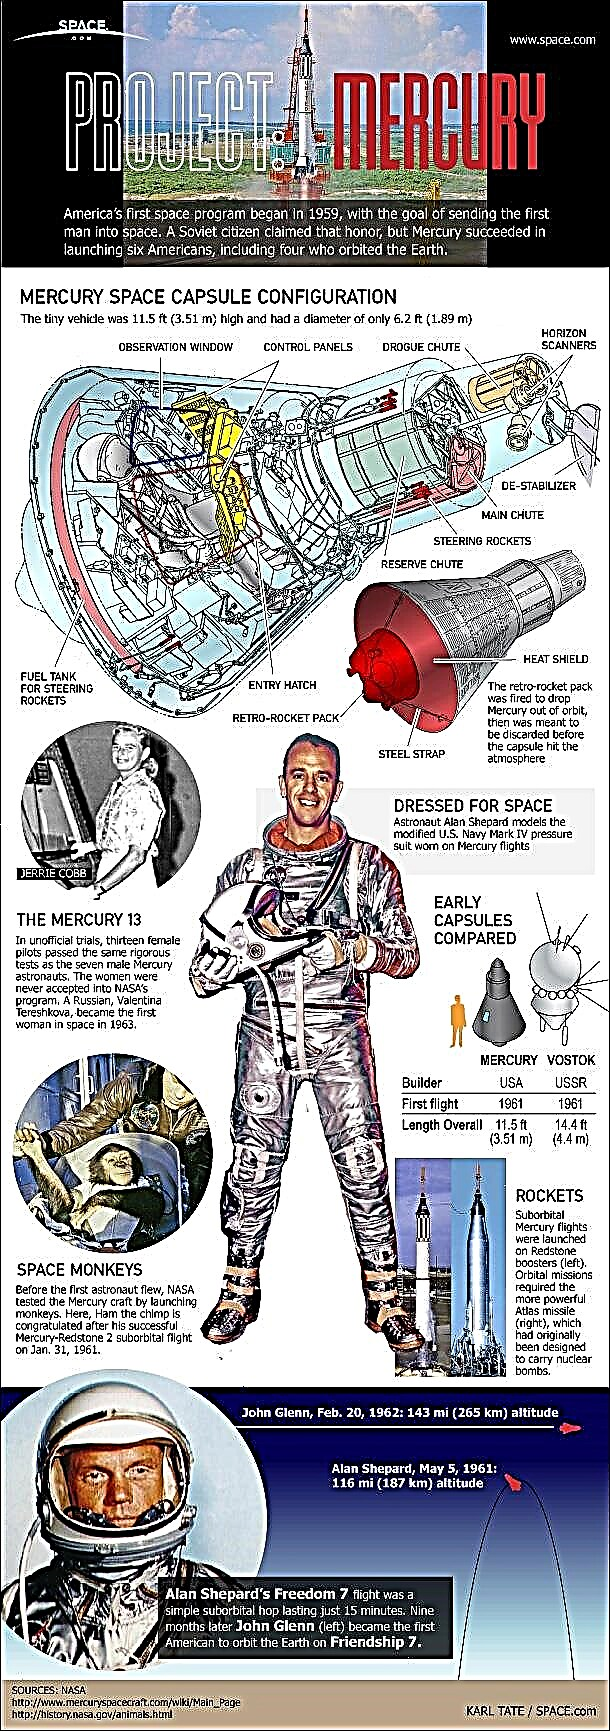 Proyecto Mercurio: primer programa espacial tripulado de Estados Unidos